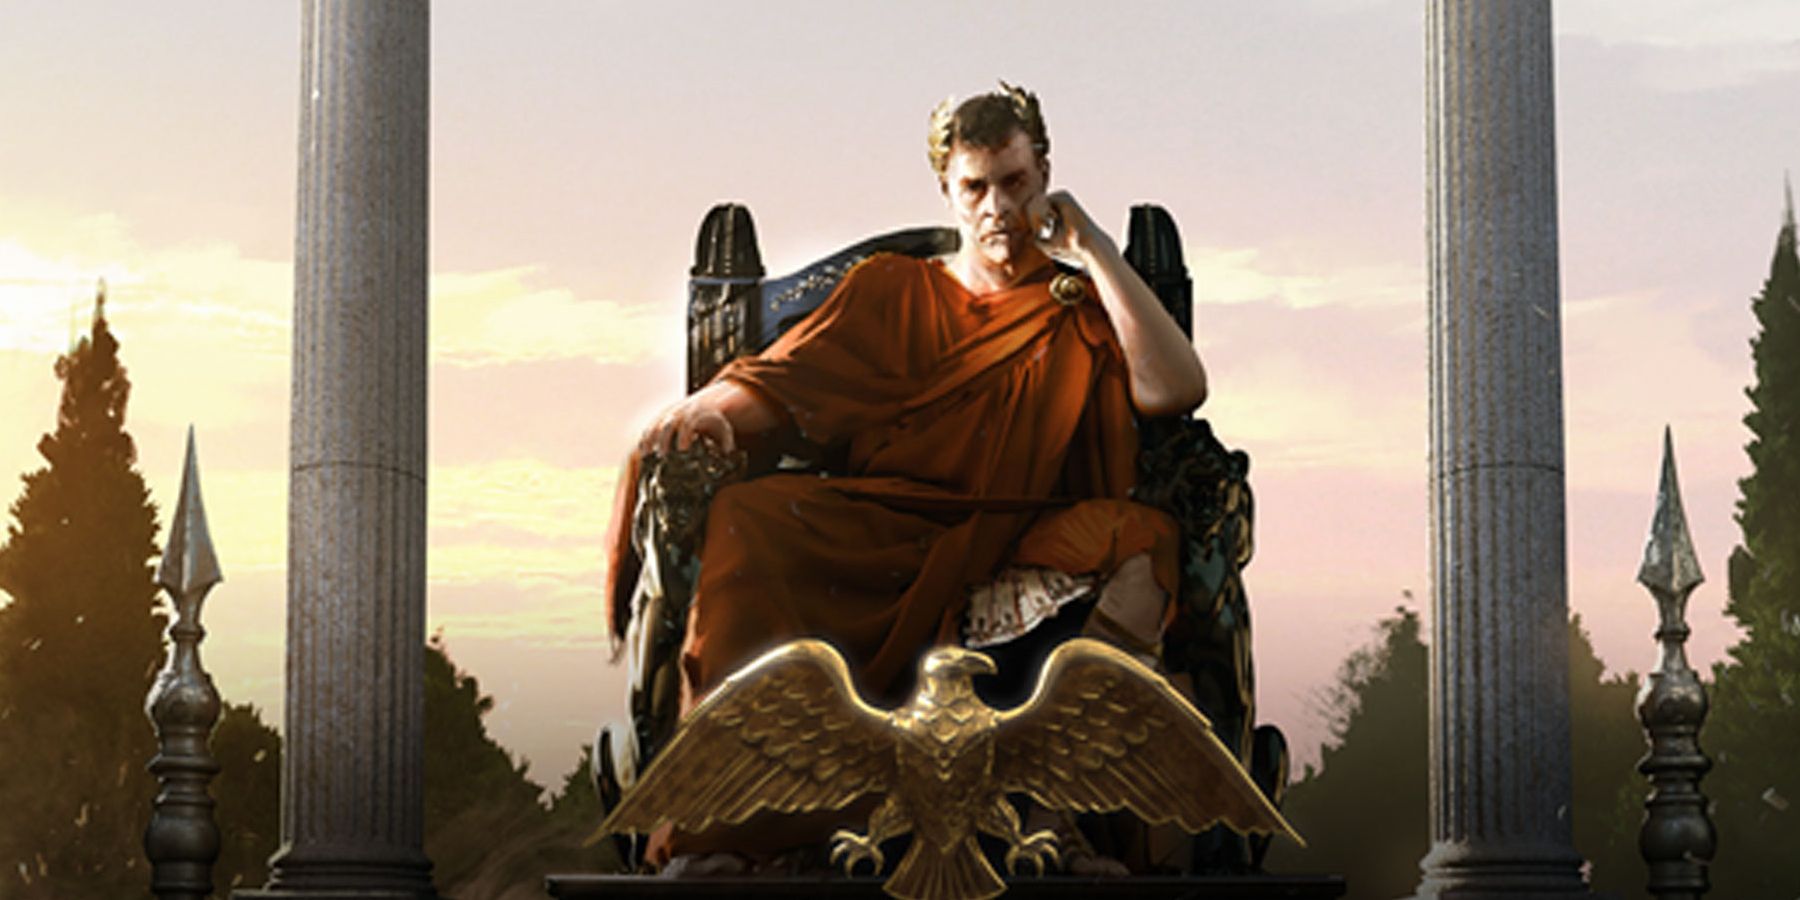 Imperator Rome - the Caesar